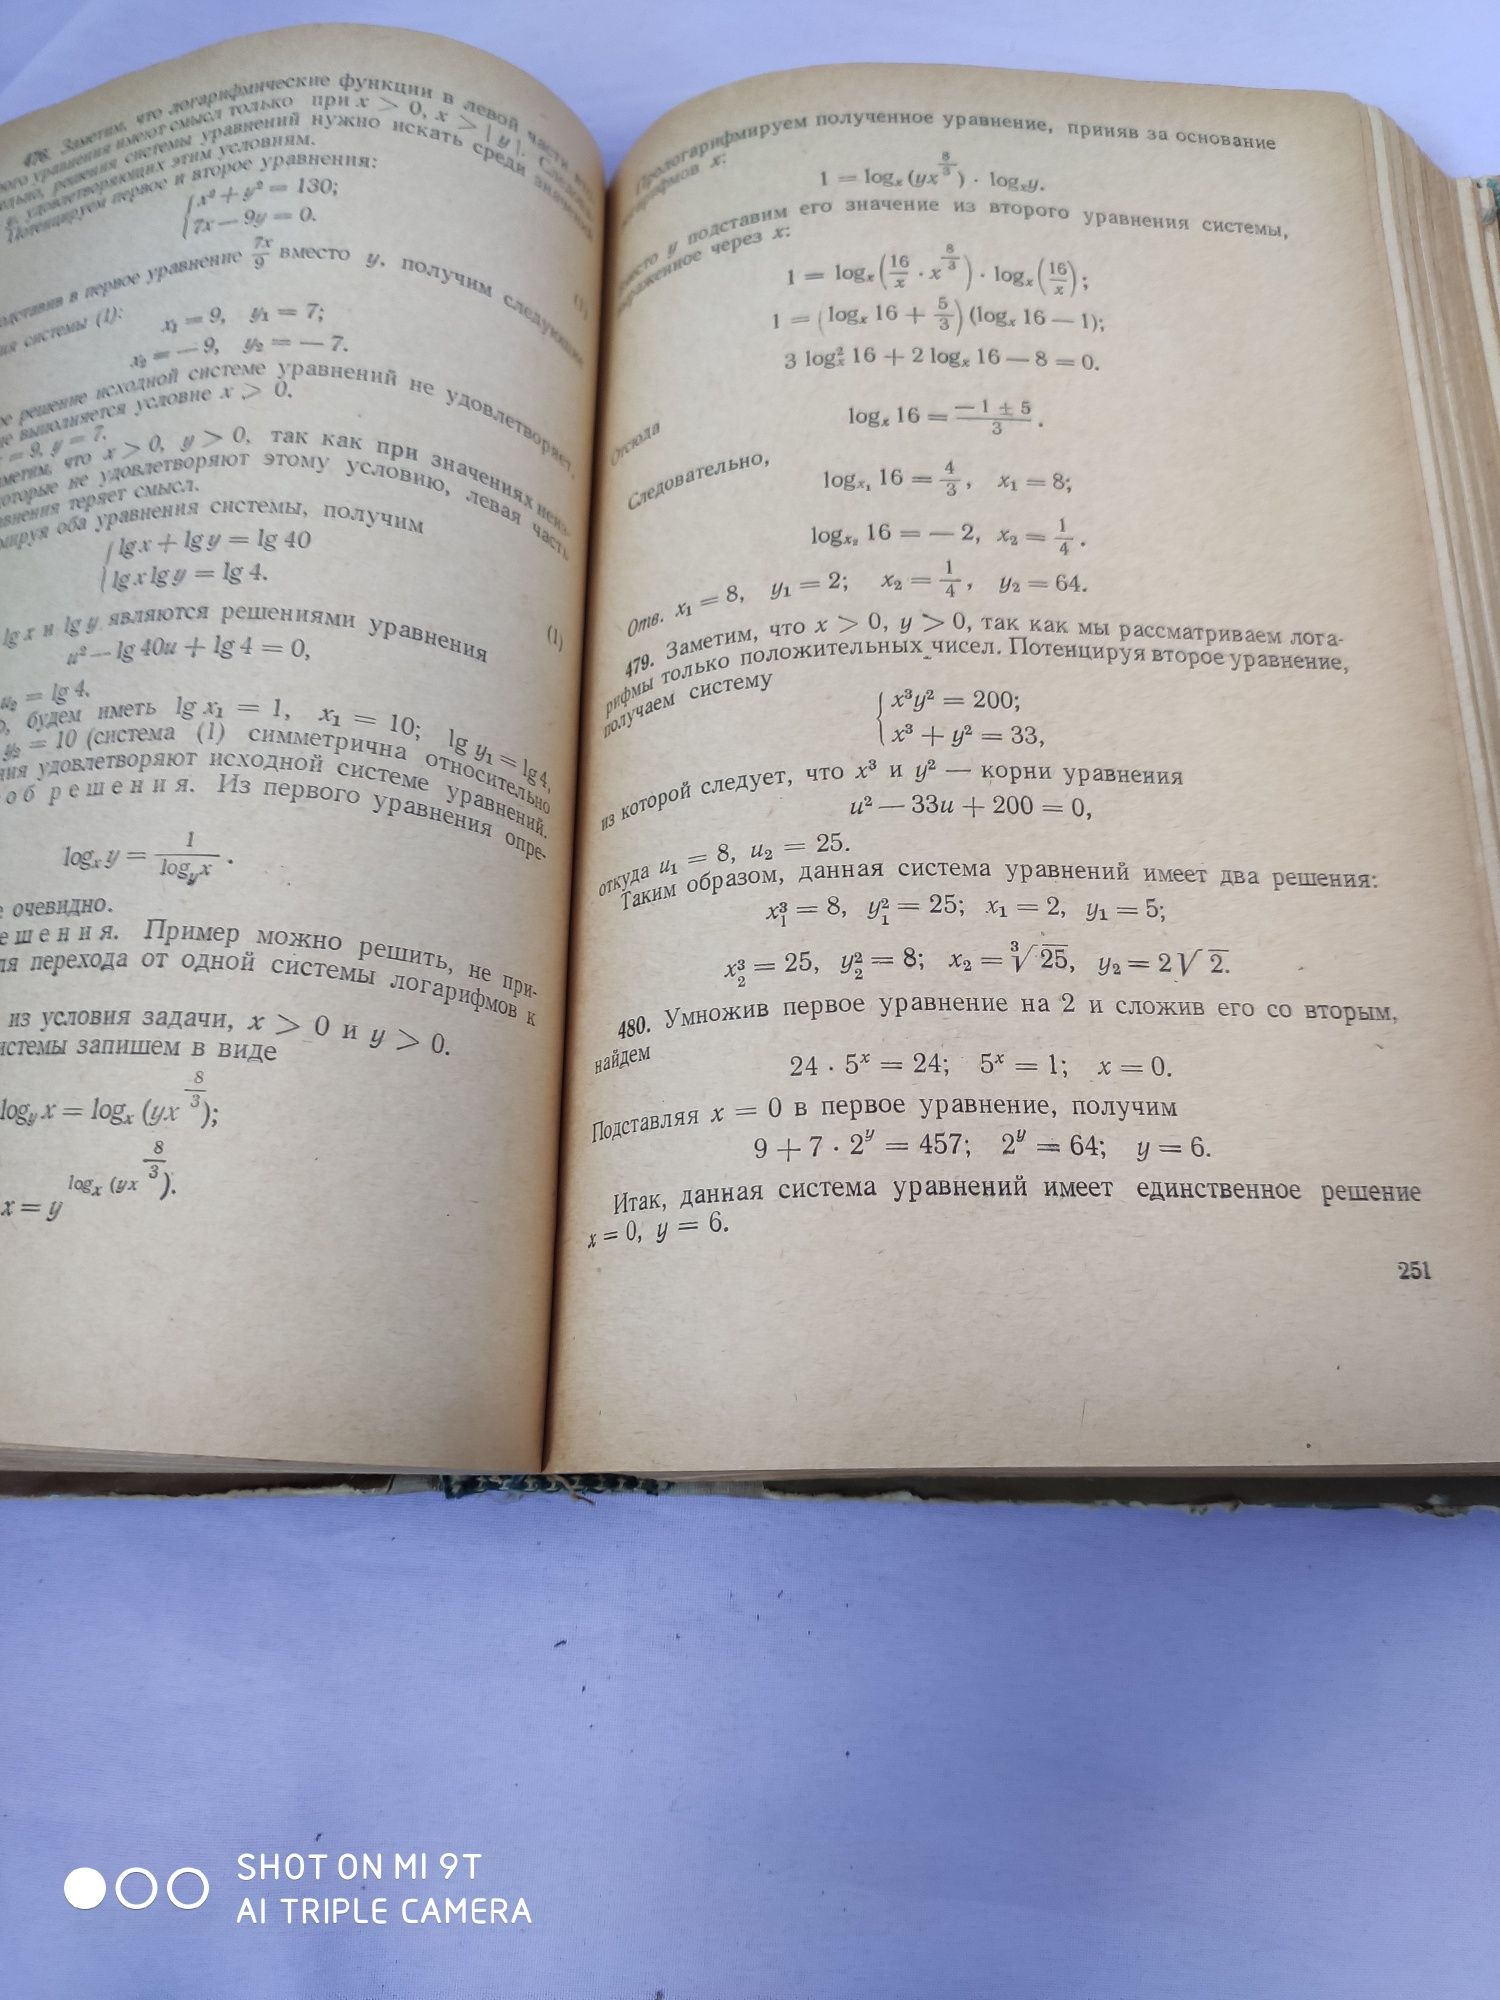 Конкурентные задачи по математике Н.С. Залогин 1964г